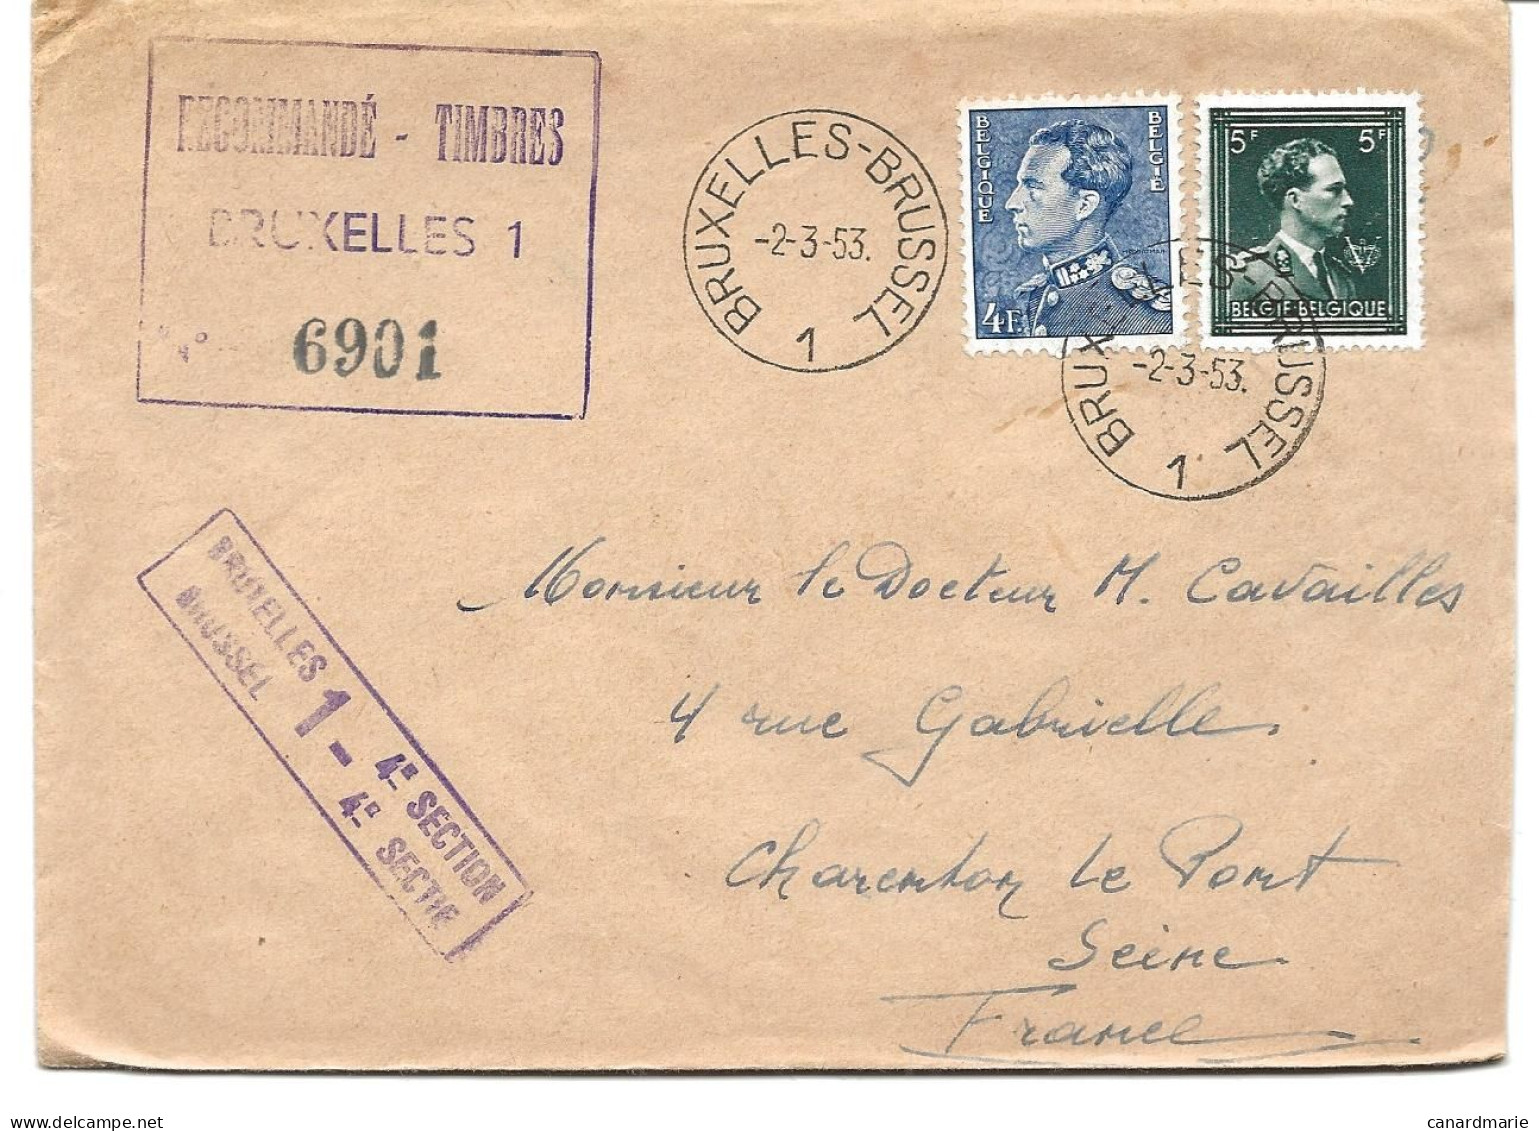 2 LETTRES POUR LA FRANCE 1953/55 AVEC CACHETS RECOMMANDE-TIMBRES BRUXELLES 1 - 4° SECTION - Briefe U. Dokumente